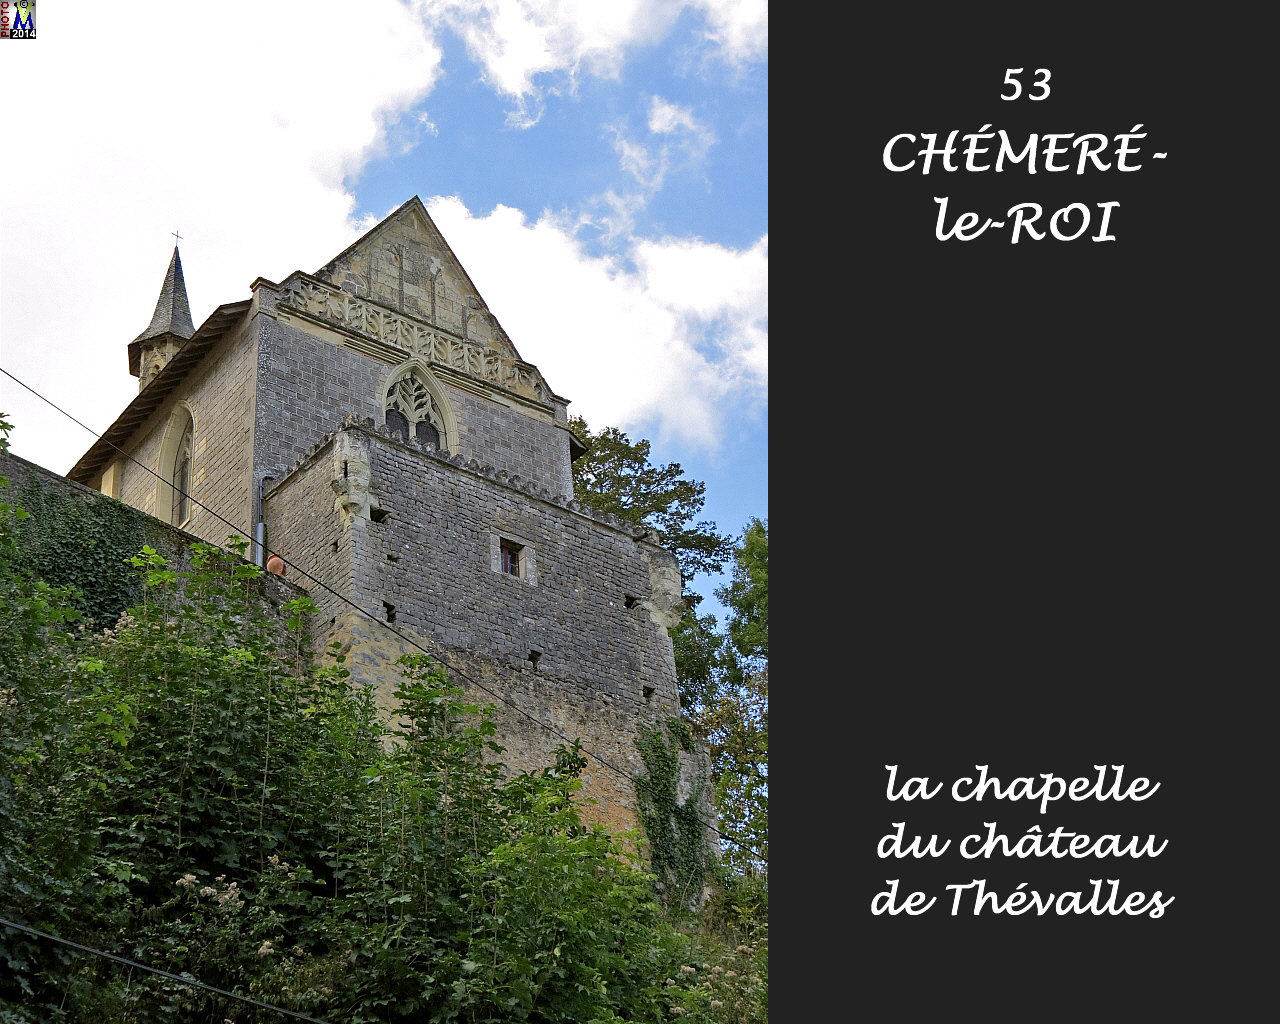 53CHEMERE-ROI_chateau_104.jpg